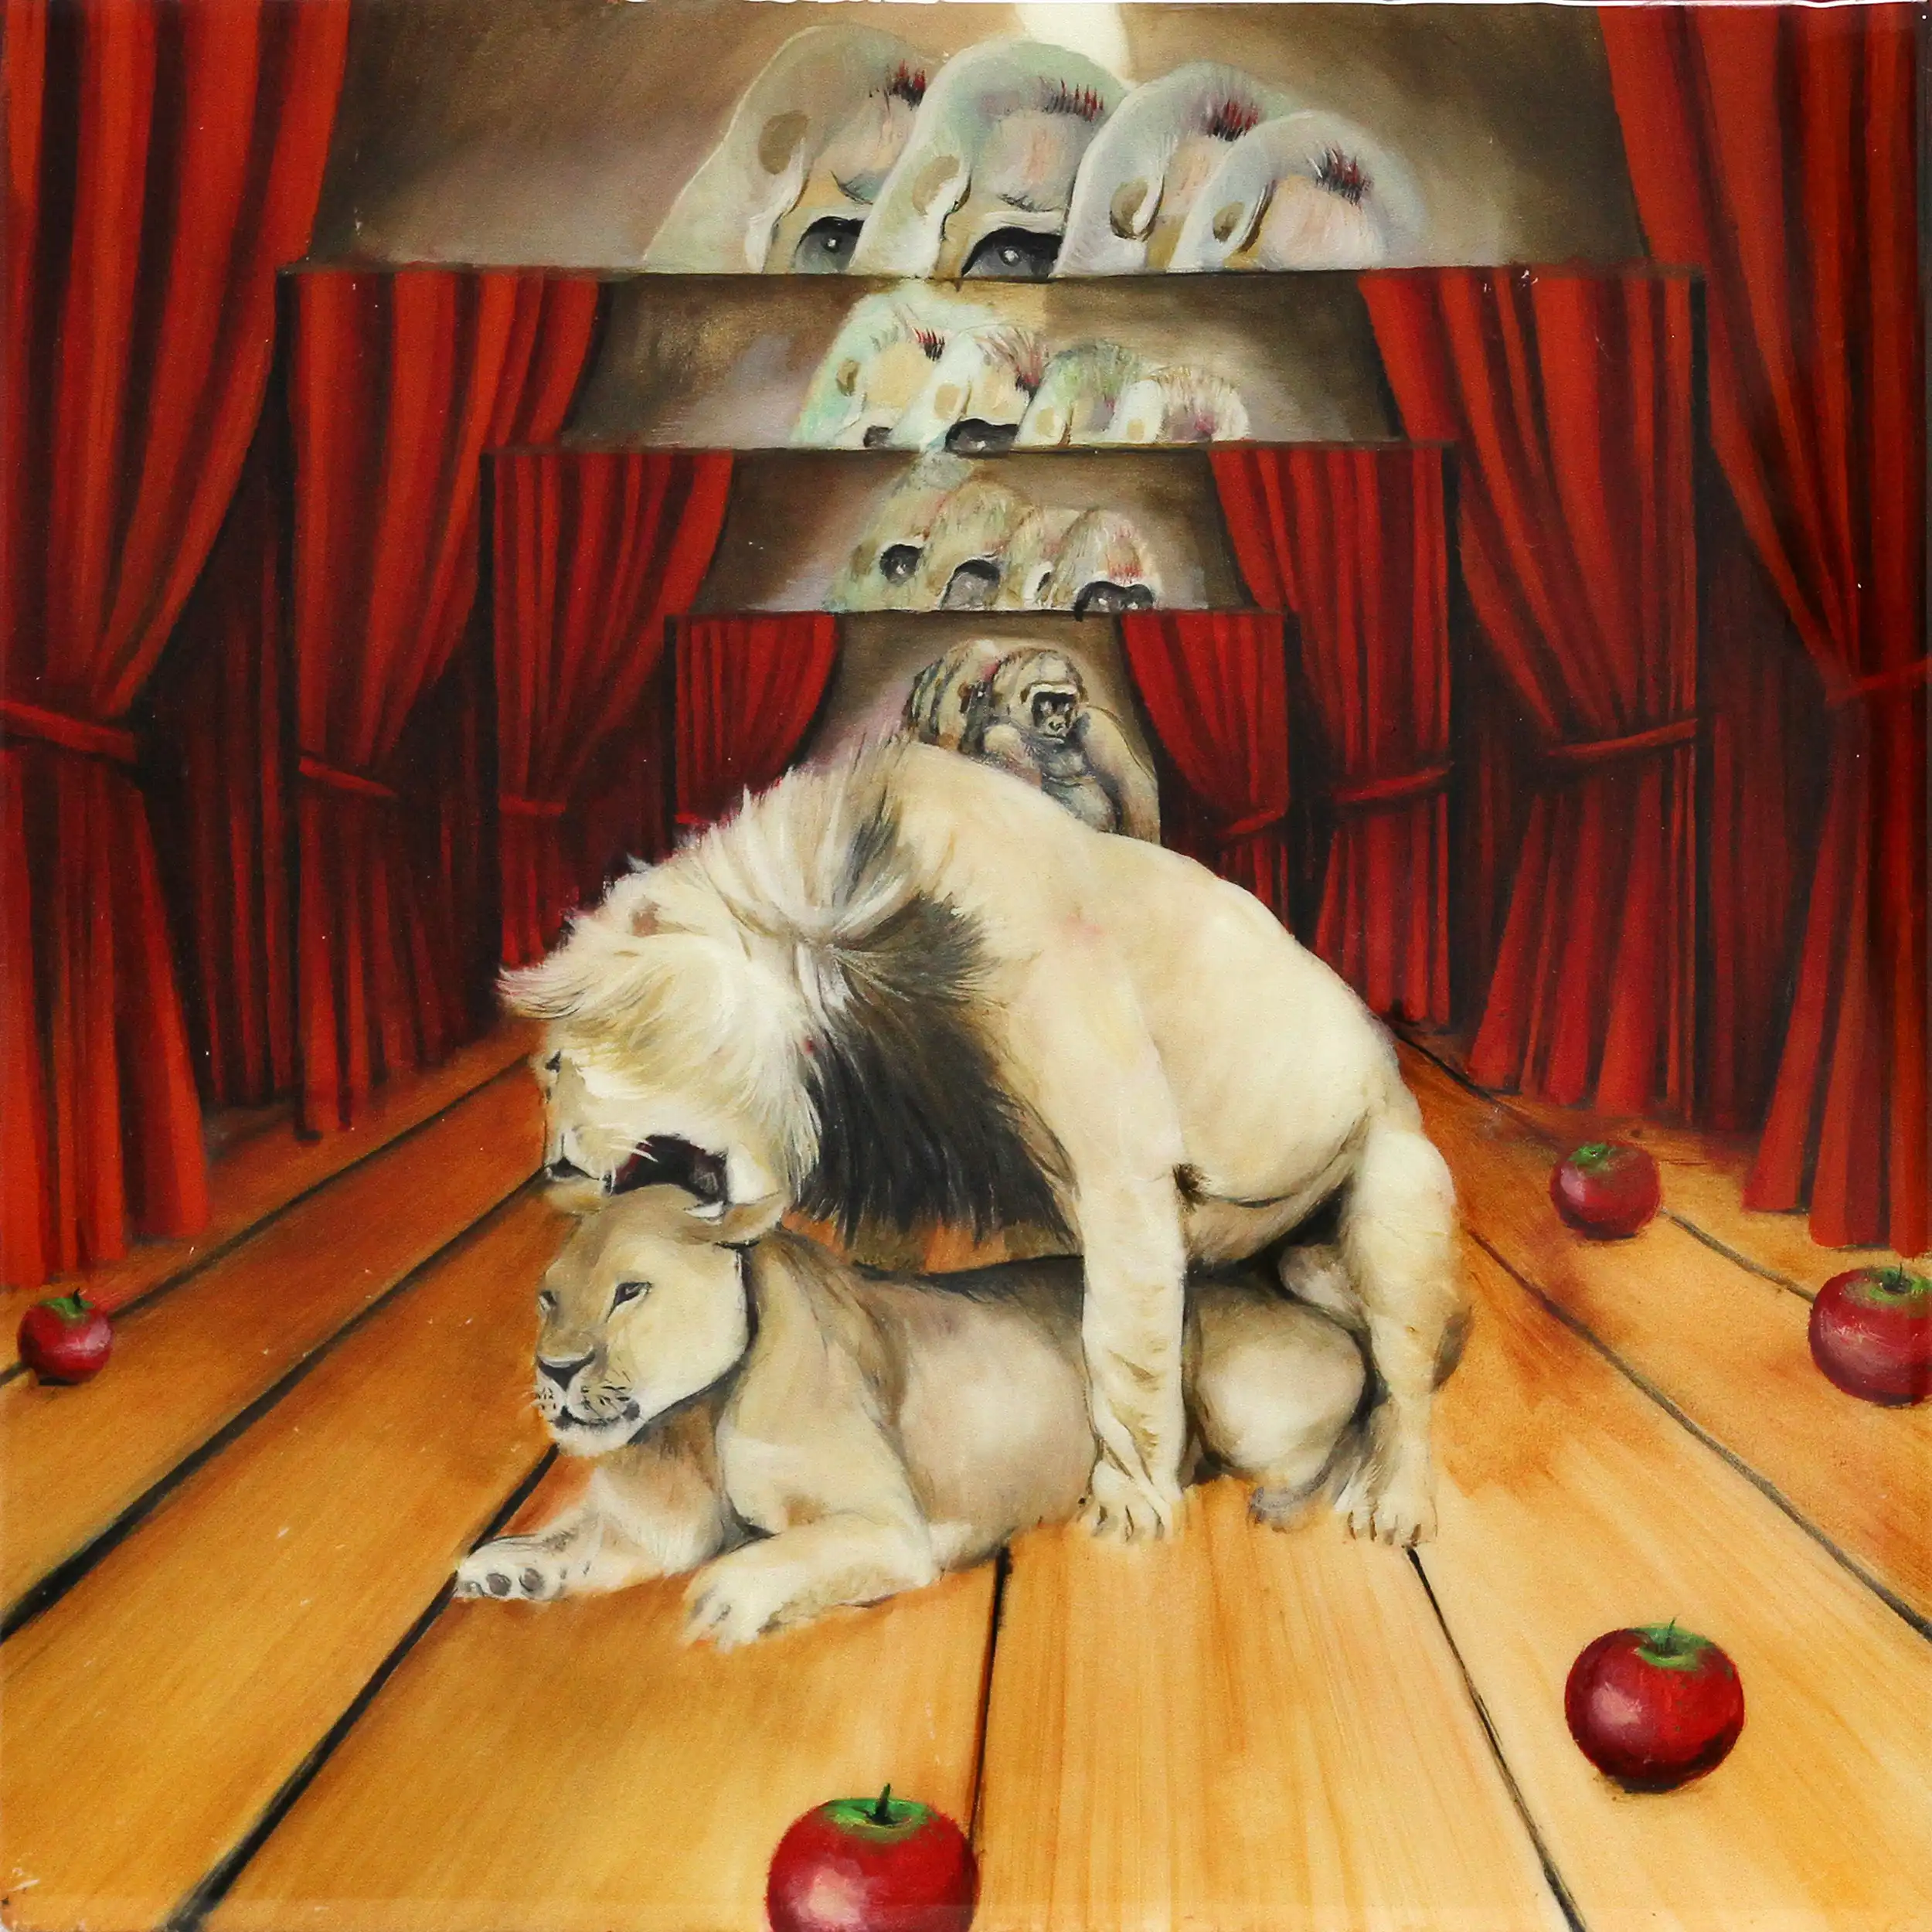 D. Block: "Du lieber Affe hättest du nur weggeschaut, nun willst du es wie der König treiben", Original/Unikat, expressive Ölmalerei